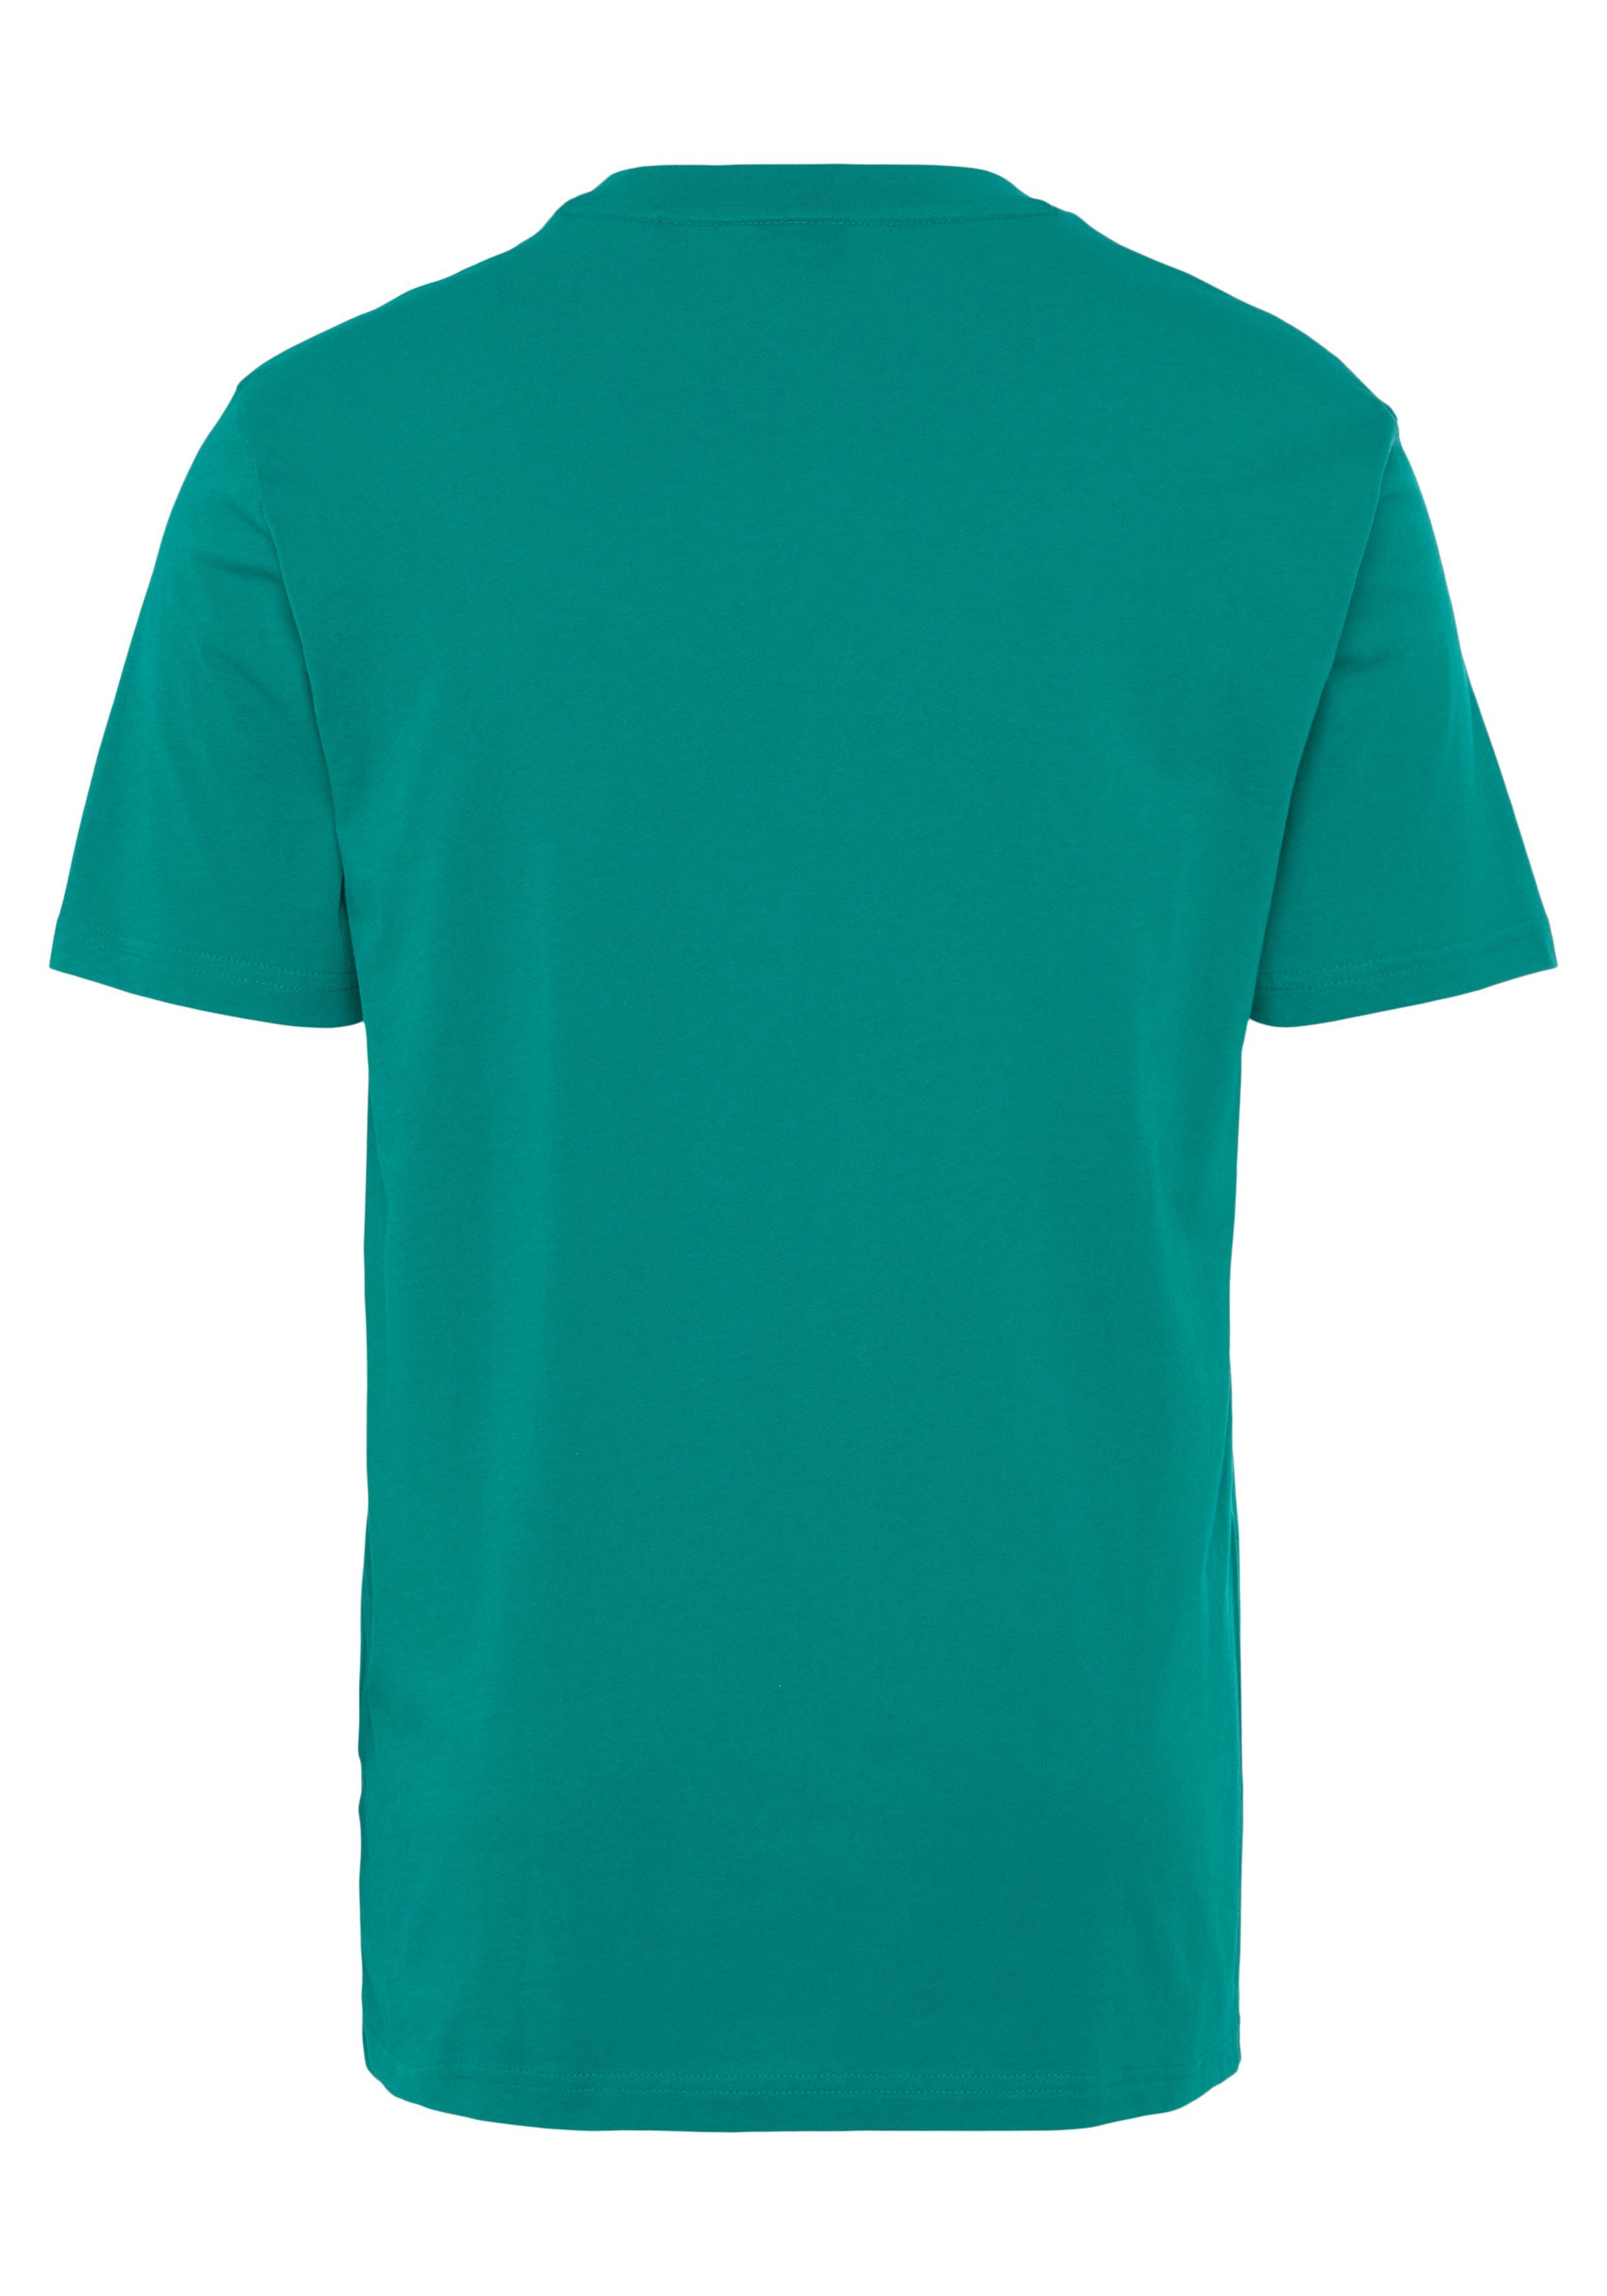 BOSS ORANGE Druck Green303 der großem 1 10246016 Brust Dark T-Shirt auf BOSS Thinking mit 01